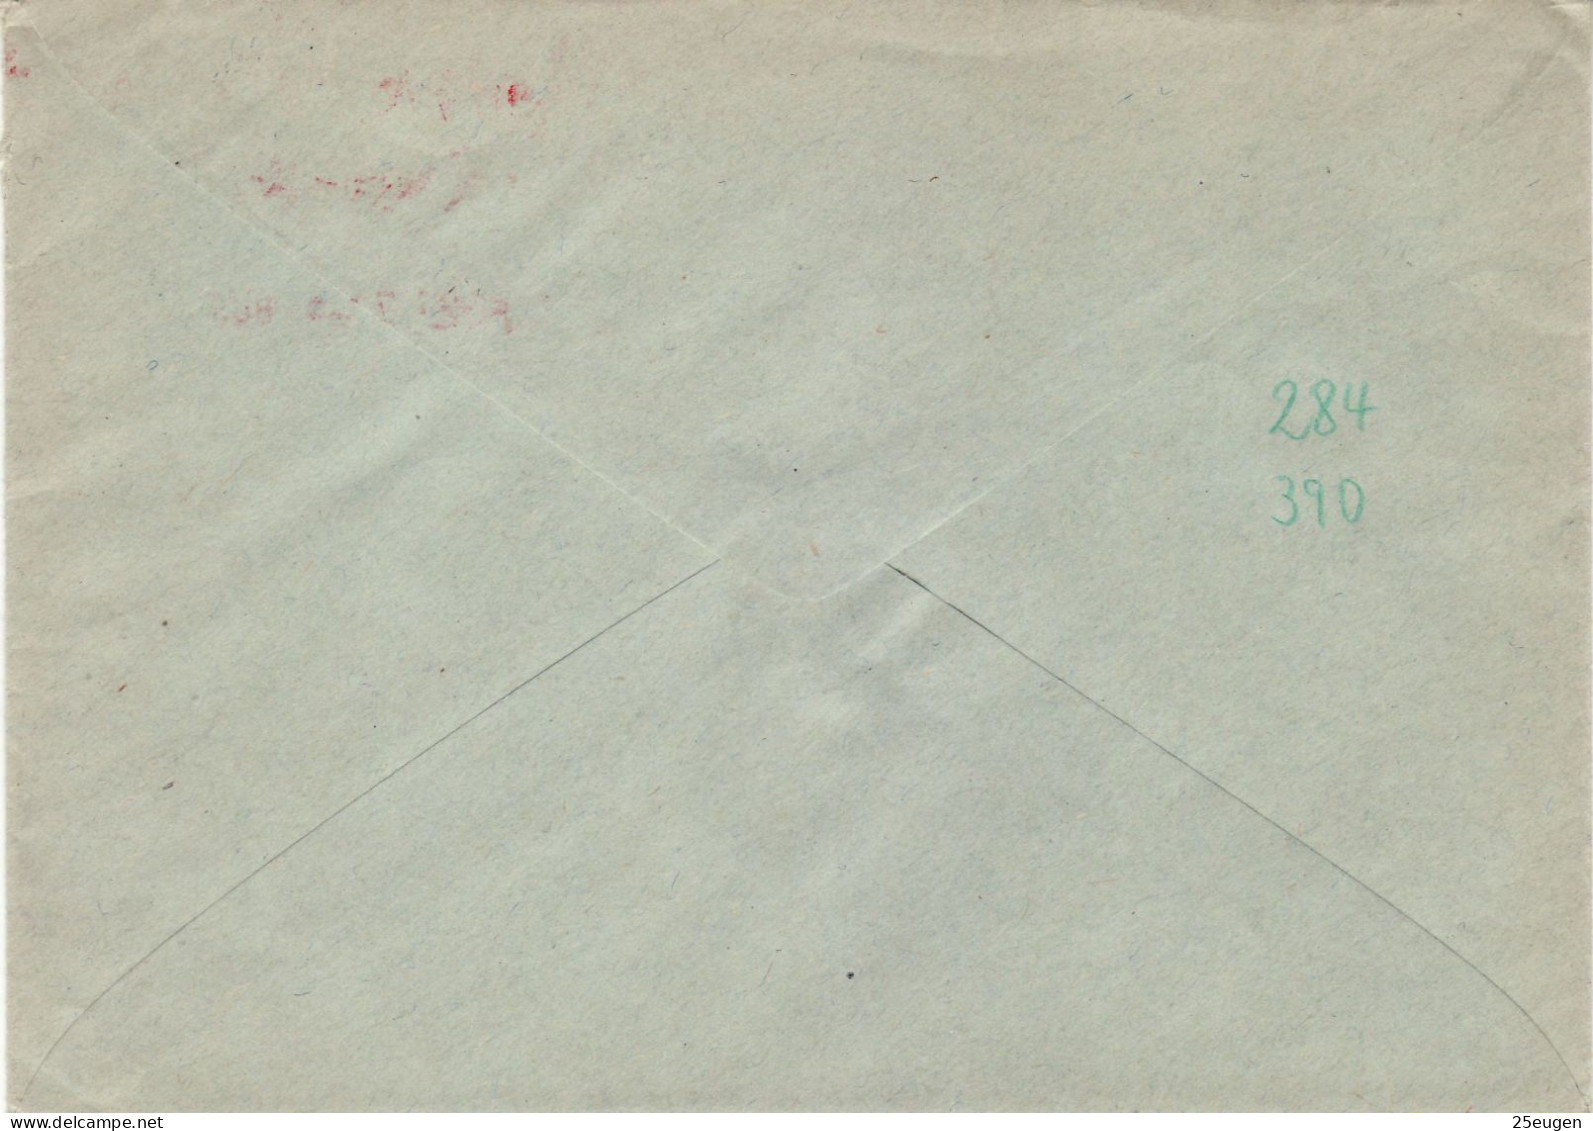 SAAR 1957  R - Letter Sent From BUESCHFELD To OBERBEXBACH - Brieven En Documenten